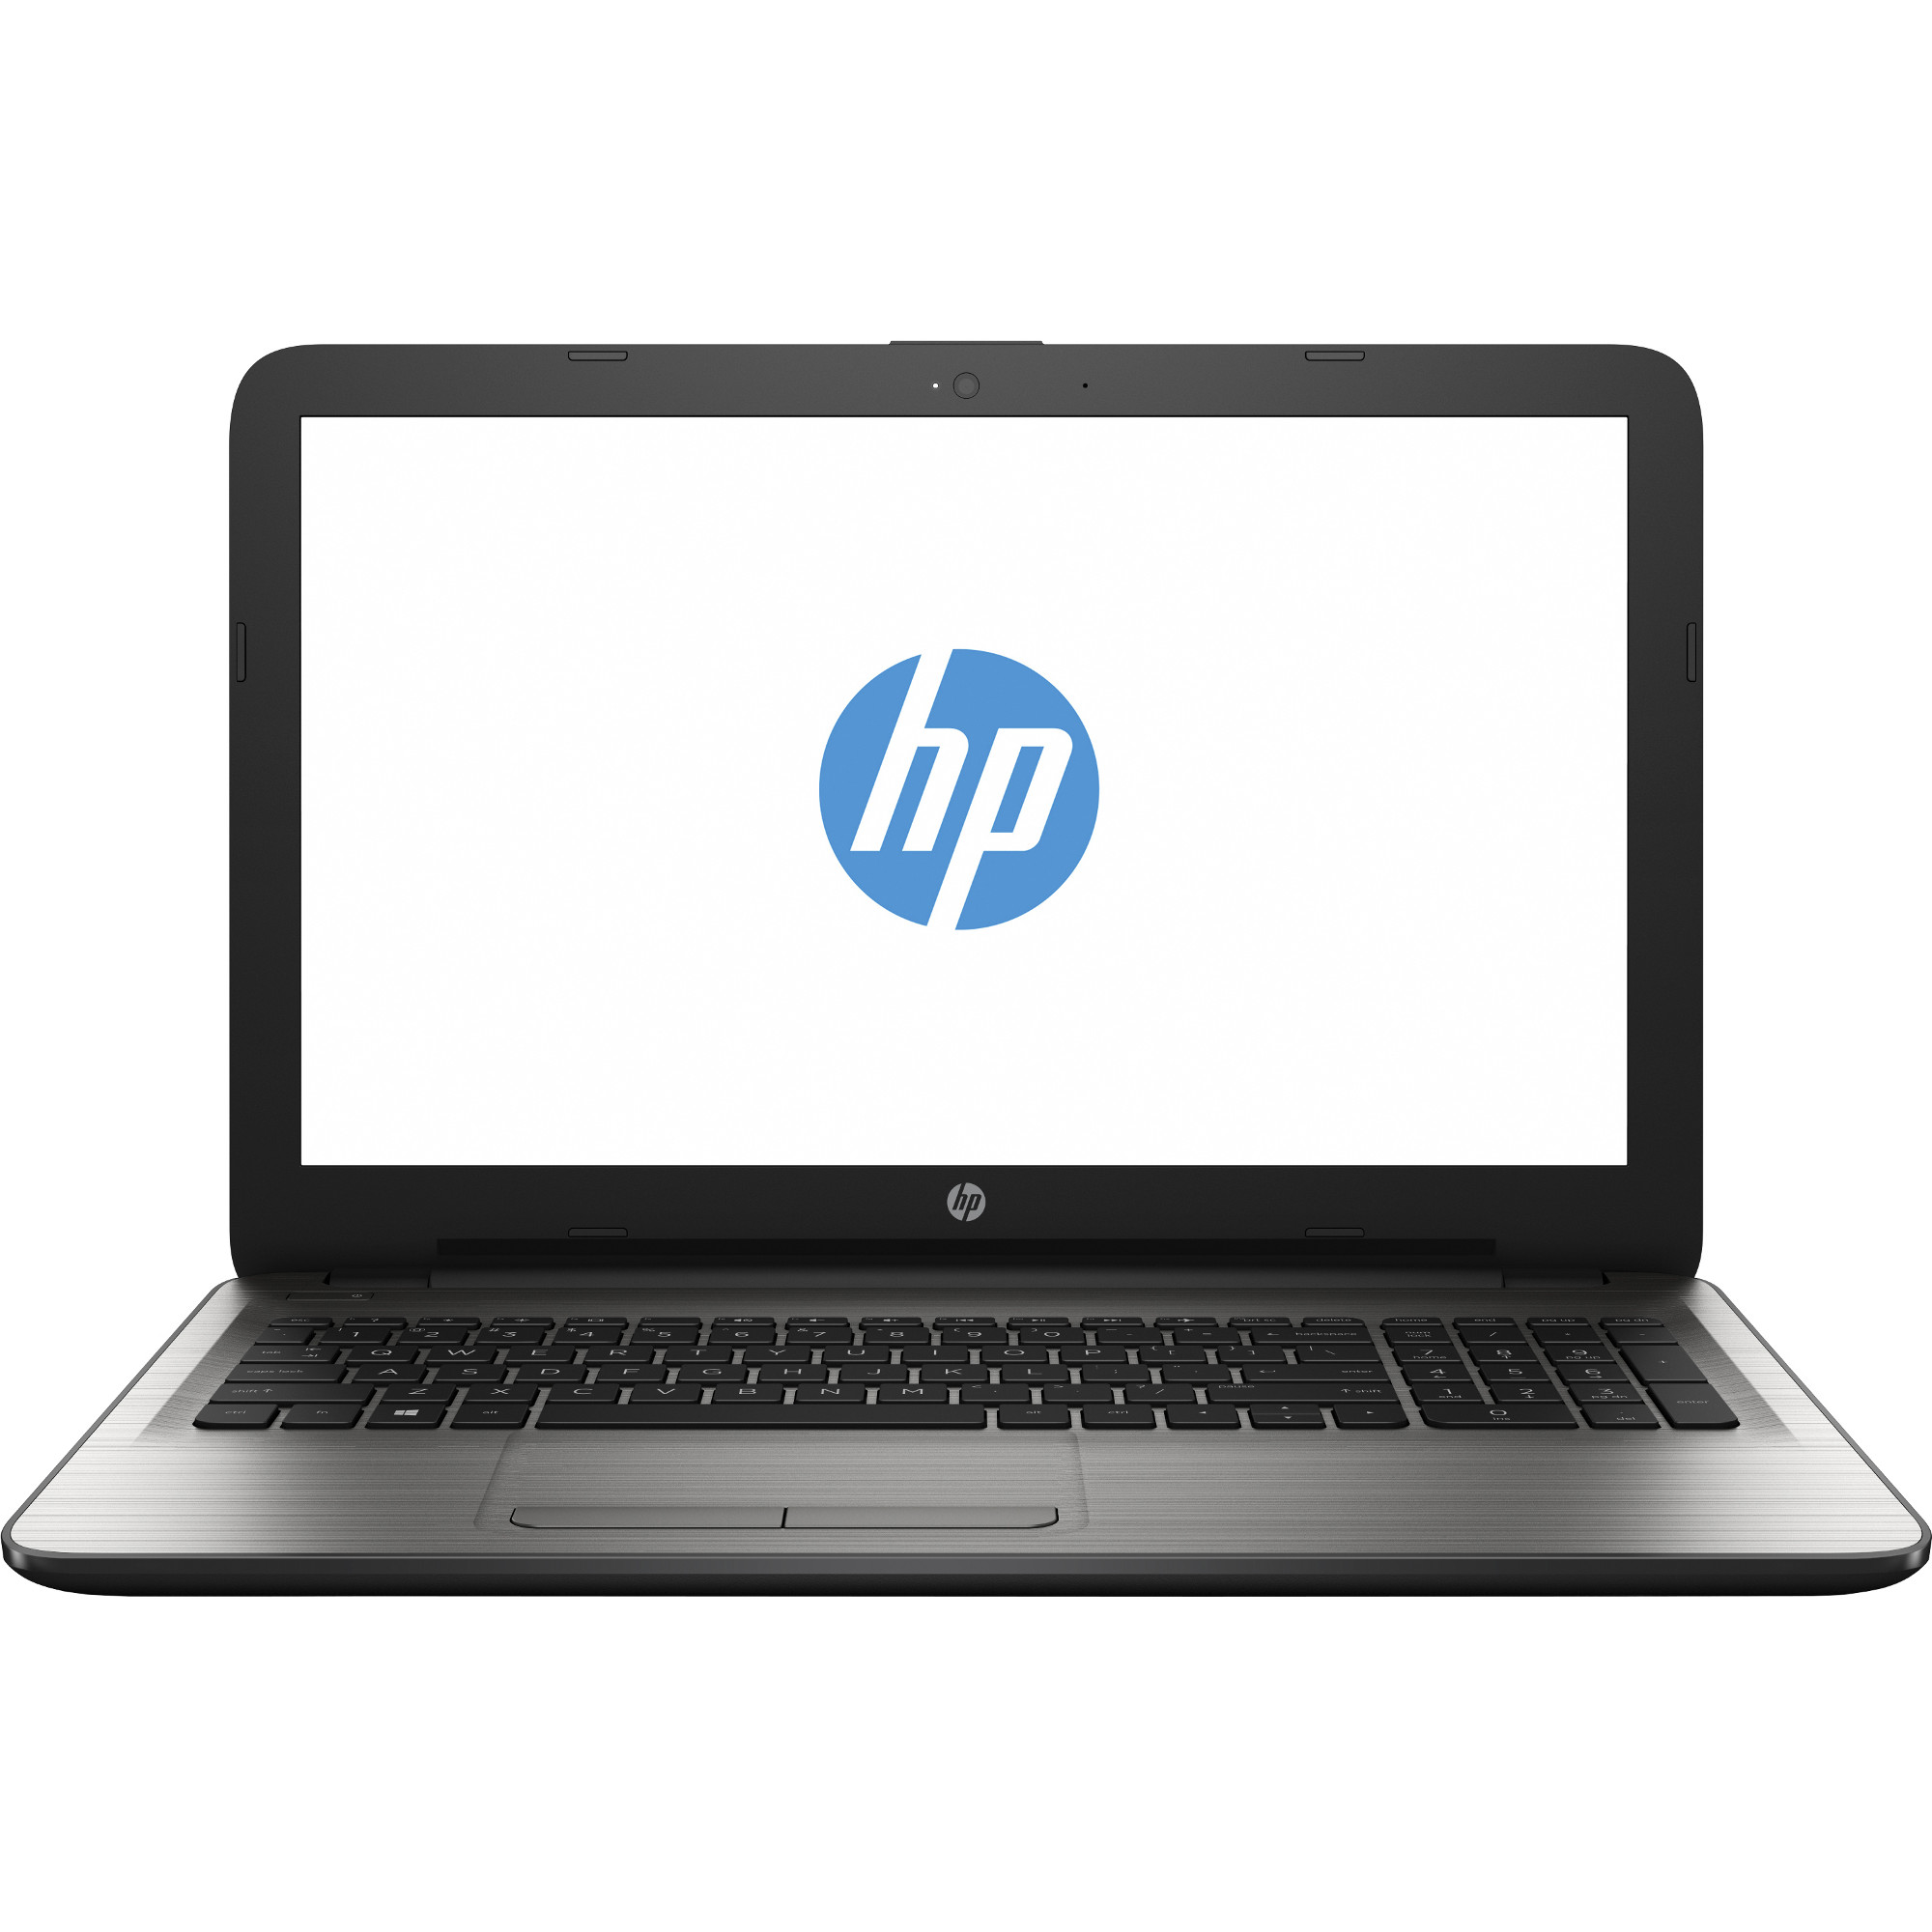 Laptop HP 15-ba000nq, AMD A-Series A6-7310, 4GB DDR3, HDD 500GB, AMD Radeon R4, Free DOS